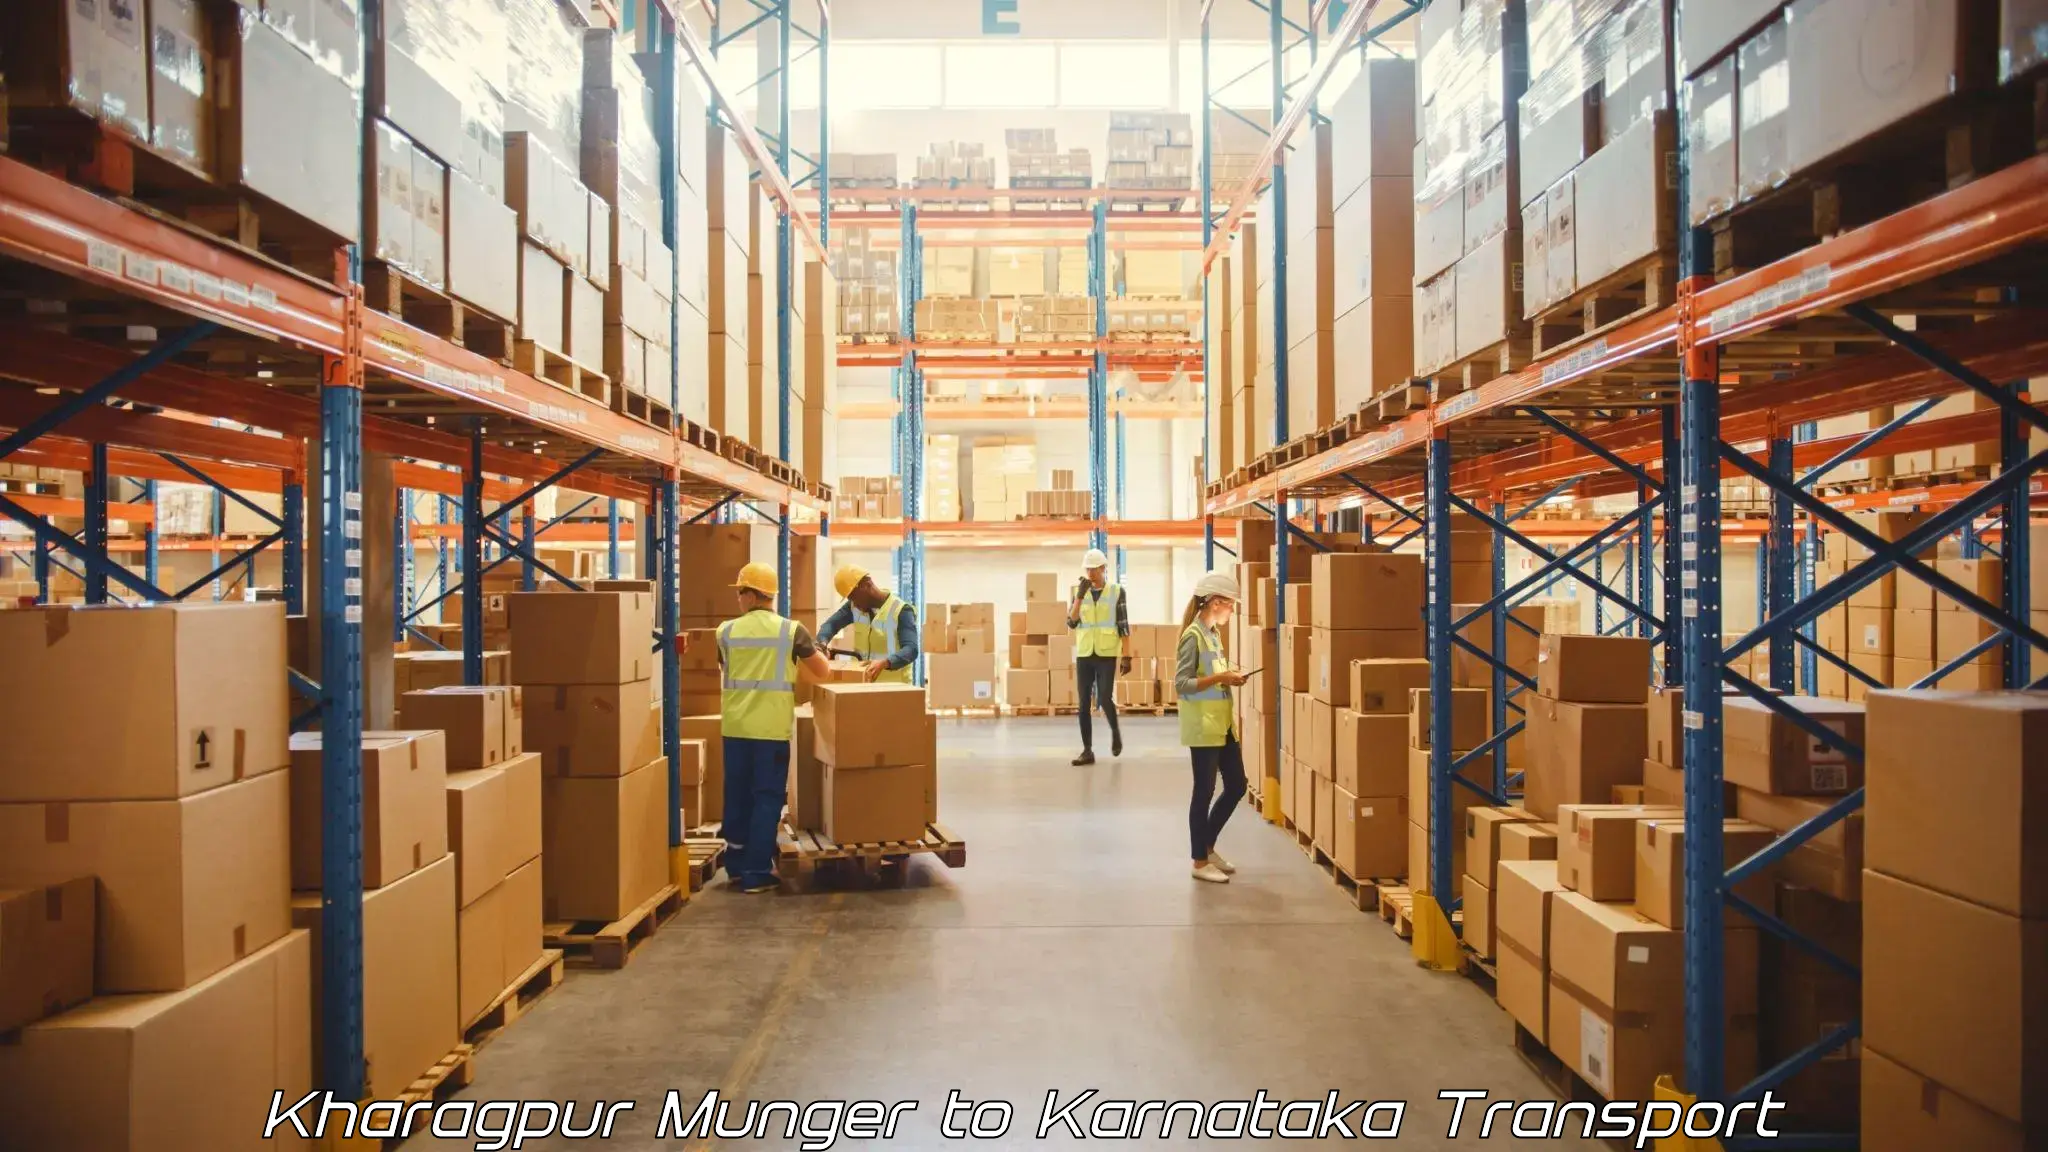 Express transport services Kharagpur Munger to Karnataka